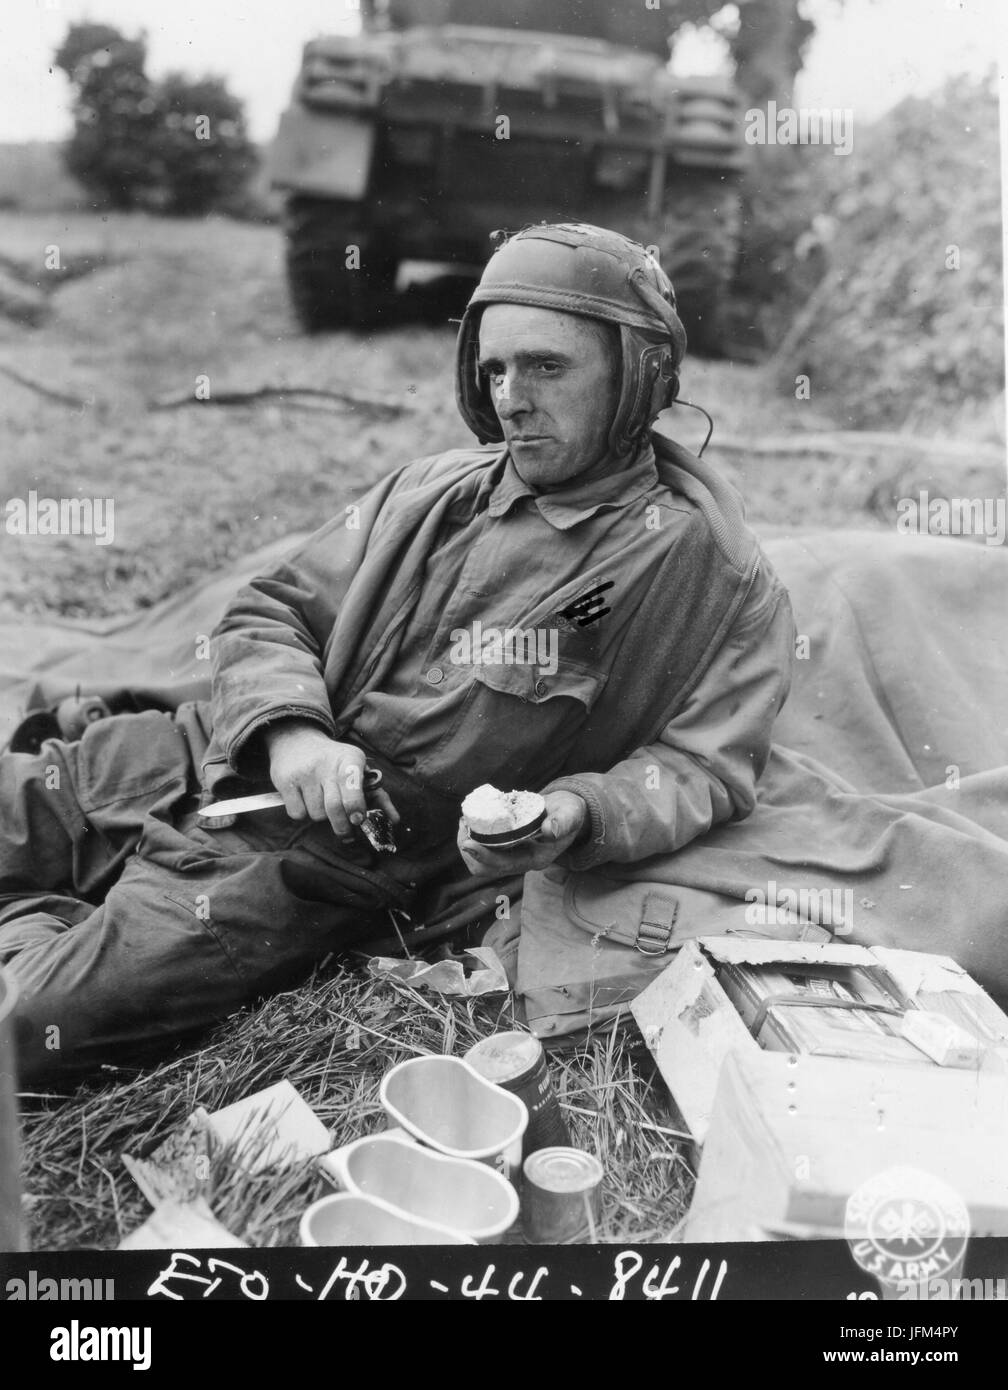 PFC Jerry C. Coleman, assistente del conducente di un serbatoio collegato ad un unità corazzate in Francia, si prende una pausa durante il lull in azione per mangiare la sua razione K. Luglio, 1944. Foto Stock